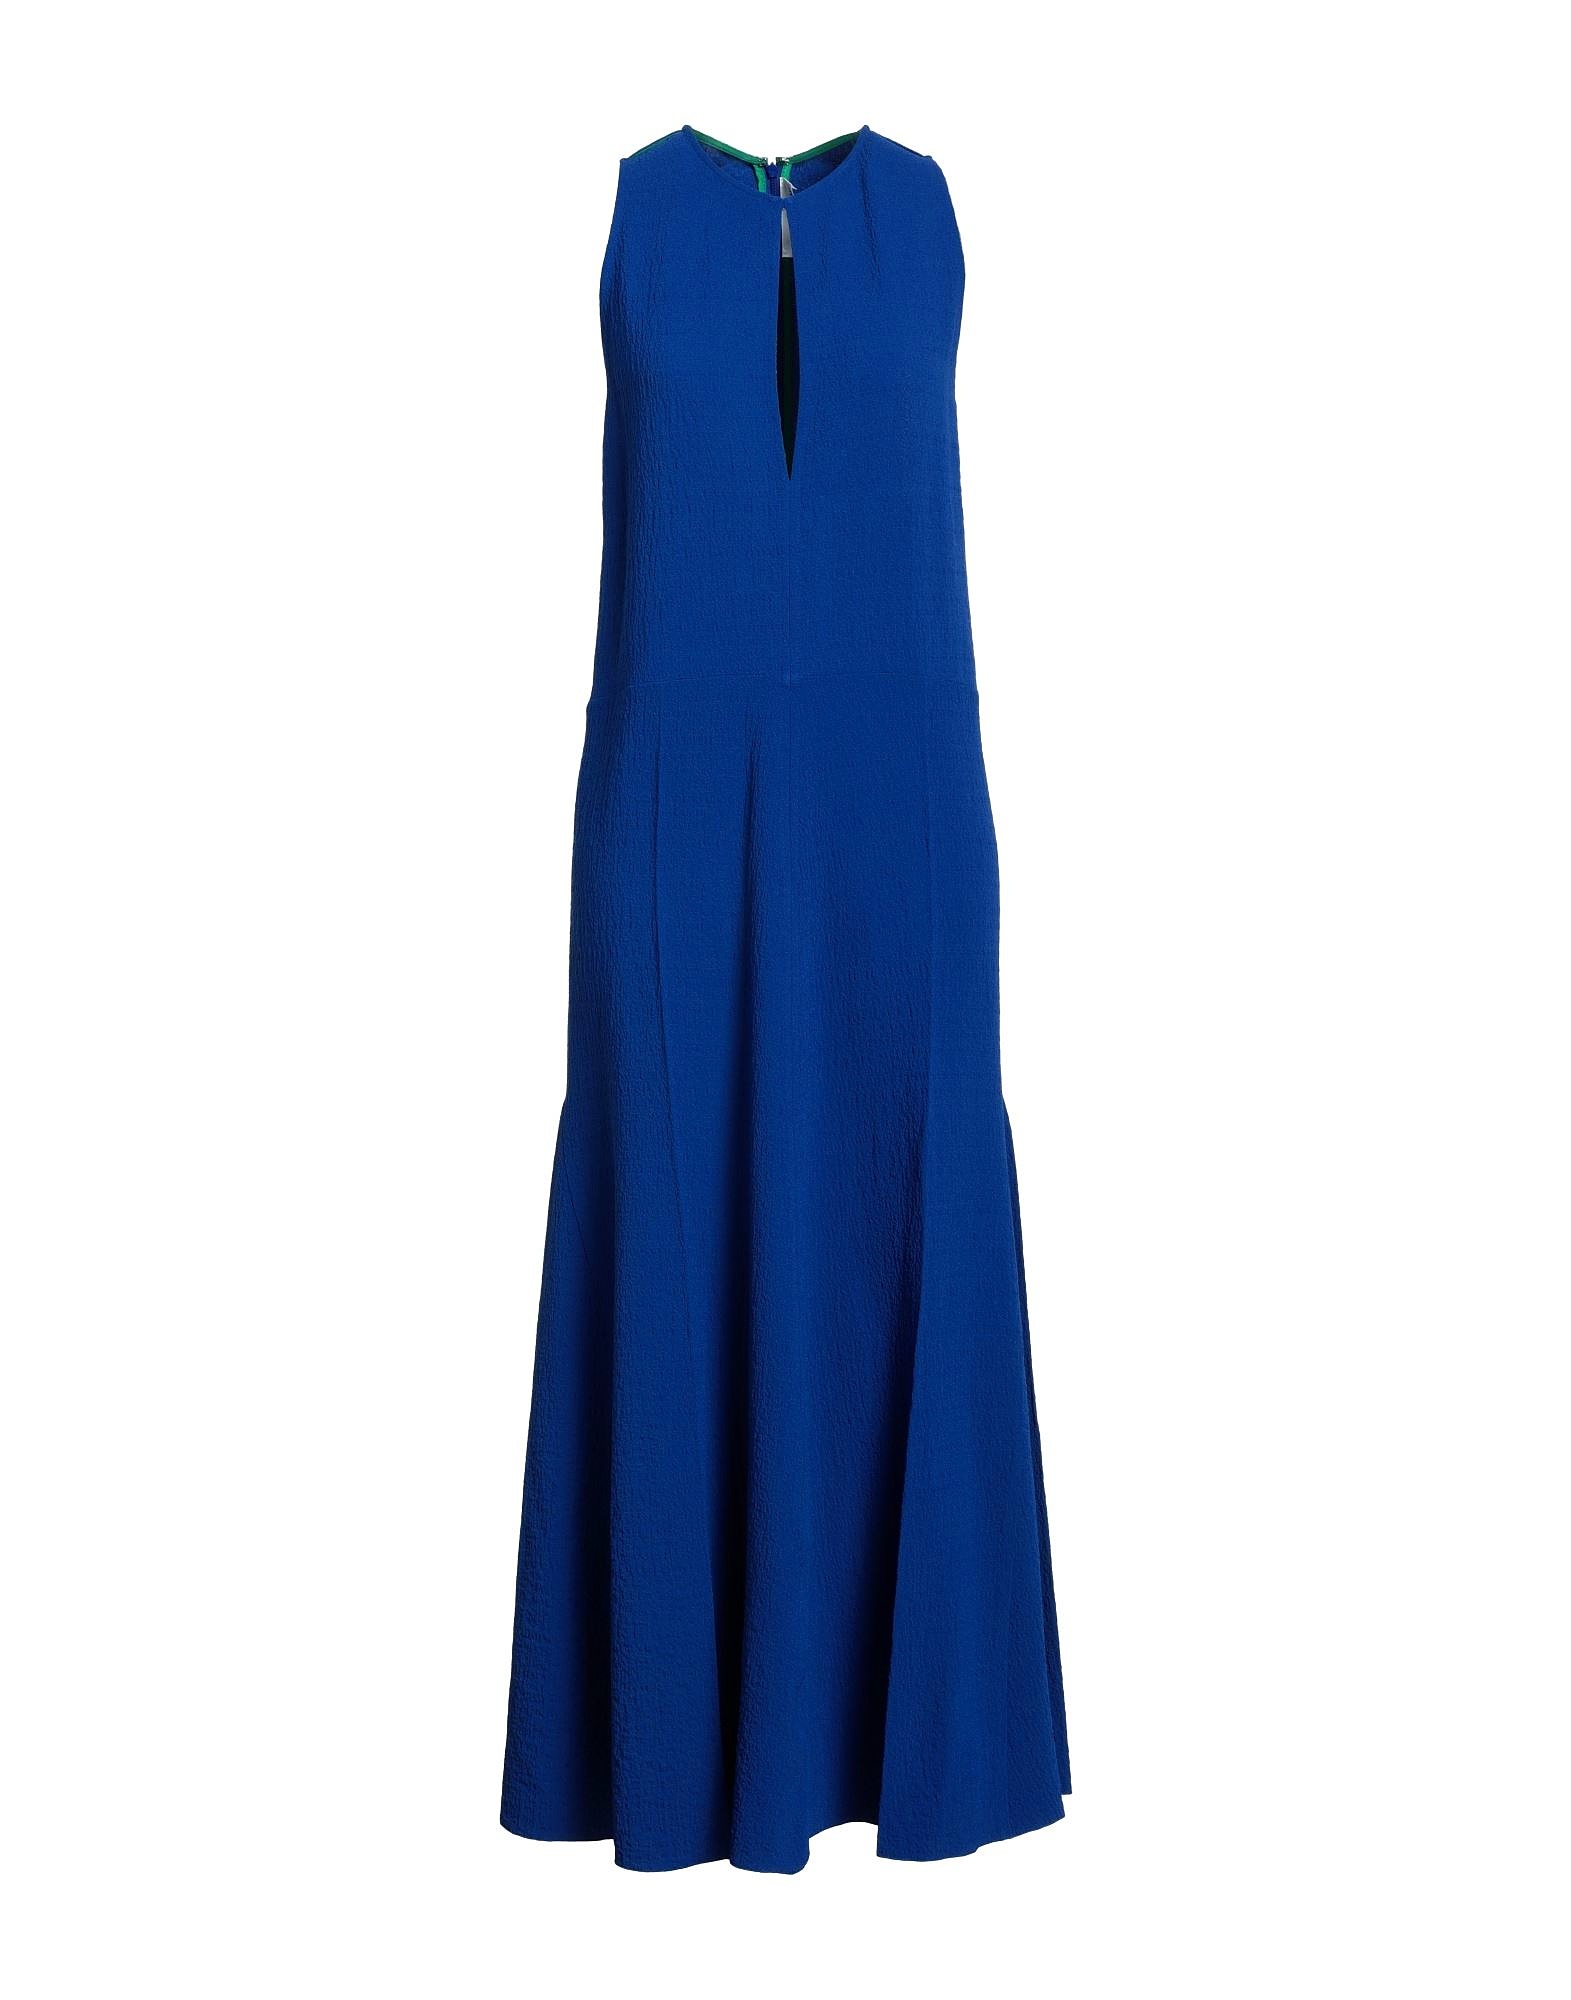 Платье Victoria Beckham Long, синий платье без бренда однотонное размер 92 бордовый